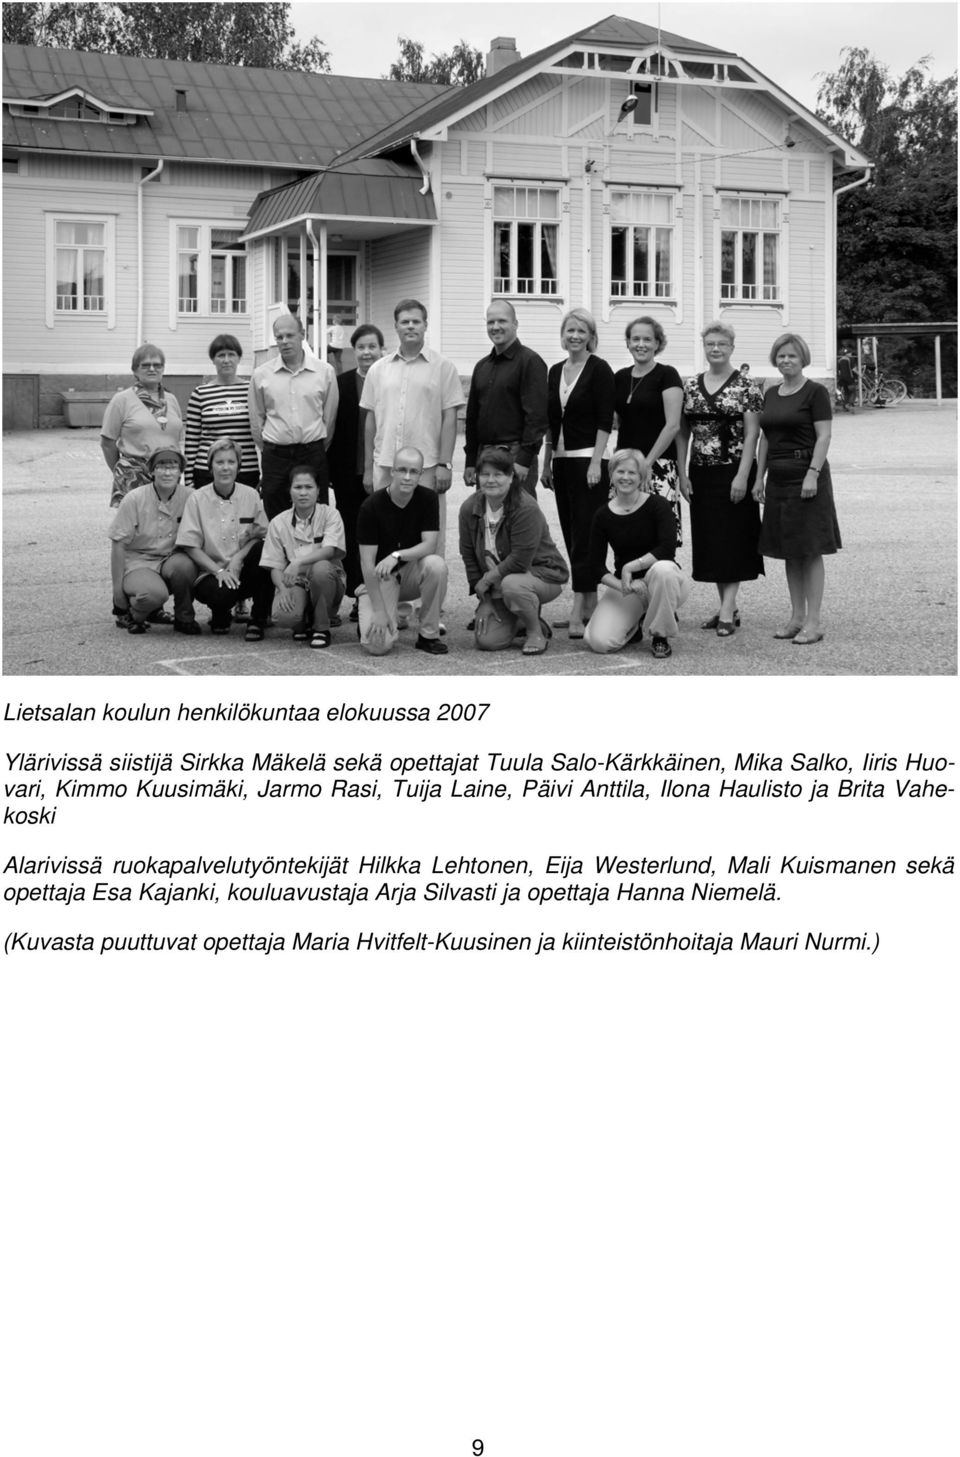 Vakituiseen opettajan virkaan minut valittiin kesällä 1973, olin tuolloin koulun kuudes opettaja ja koulunjohtajana toimi Antti Tuominen.